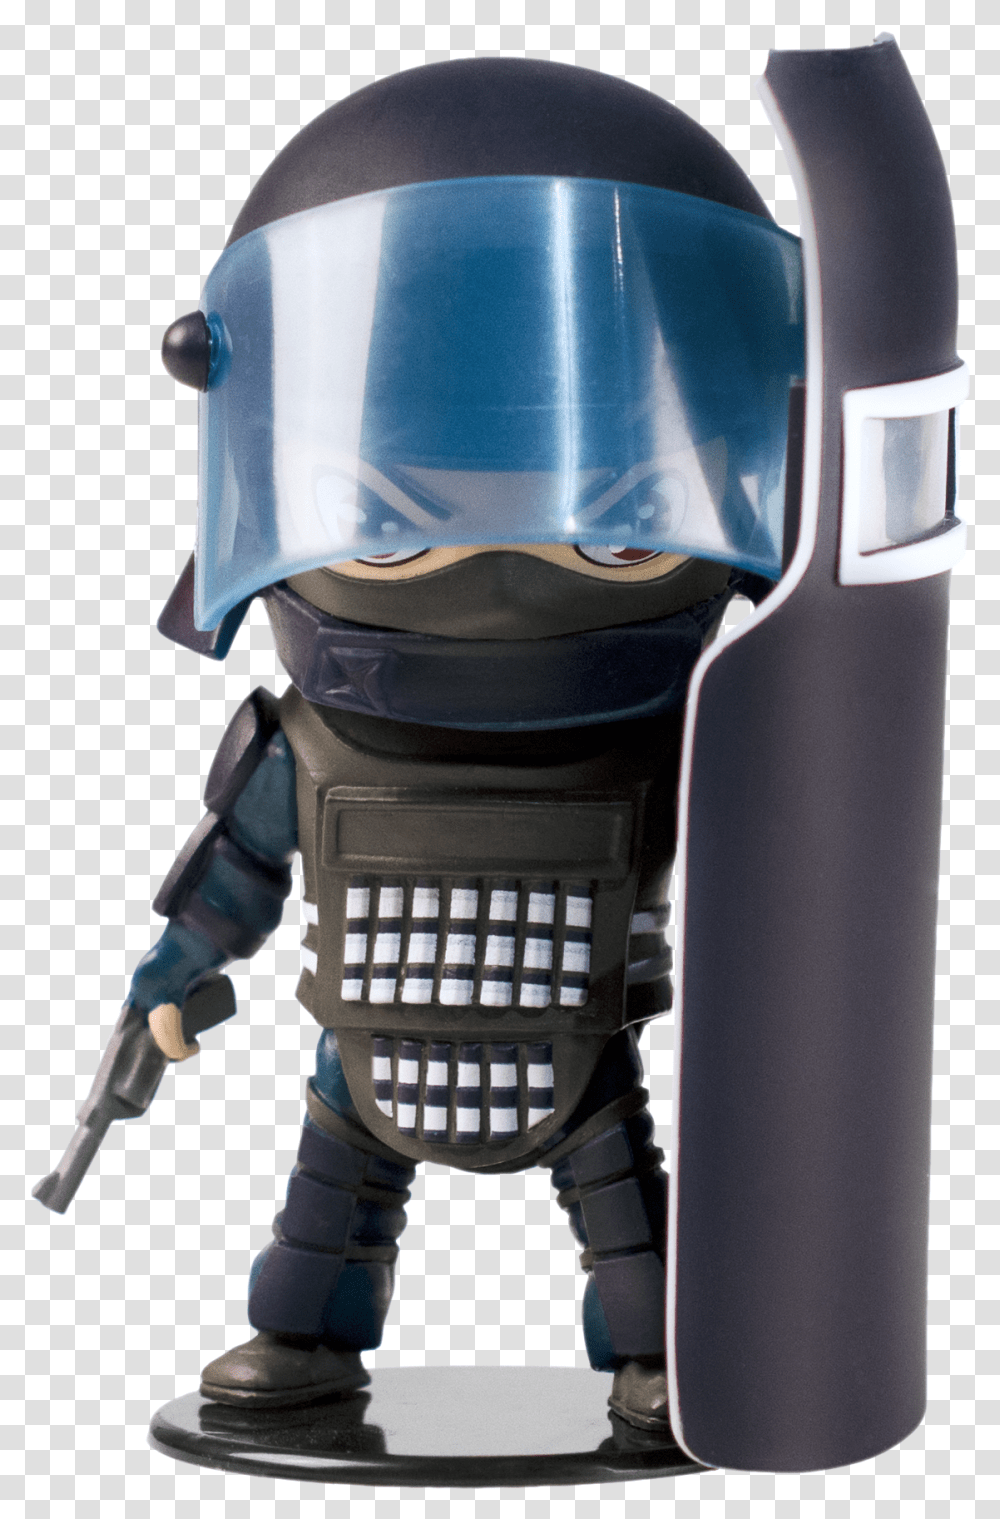 Figurine Pop Rainbow Six Siege, Helmet, Apparel, Robot Transparent Png